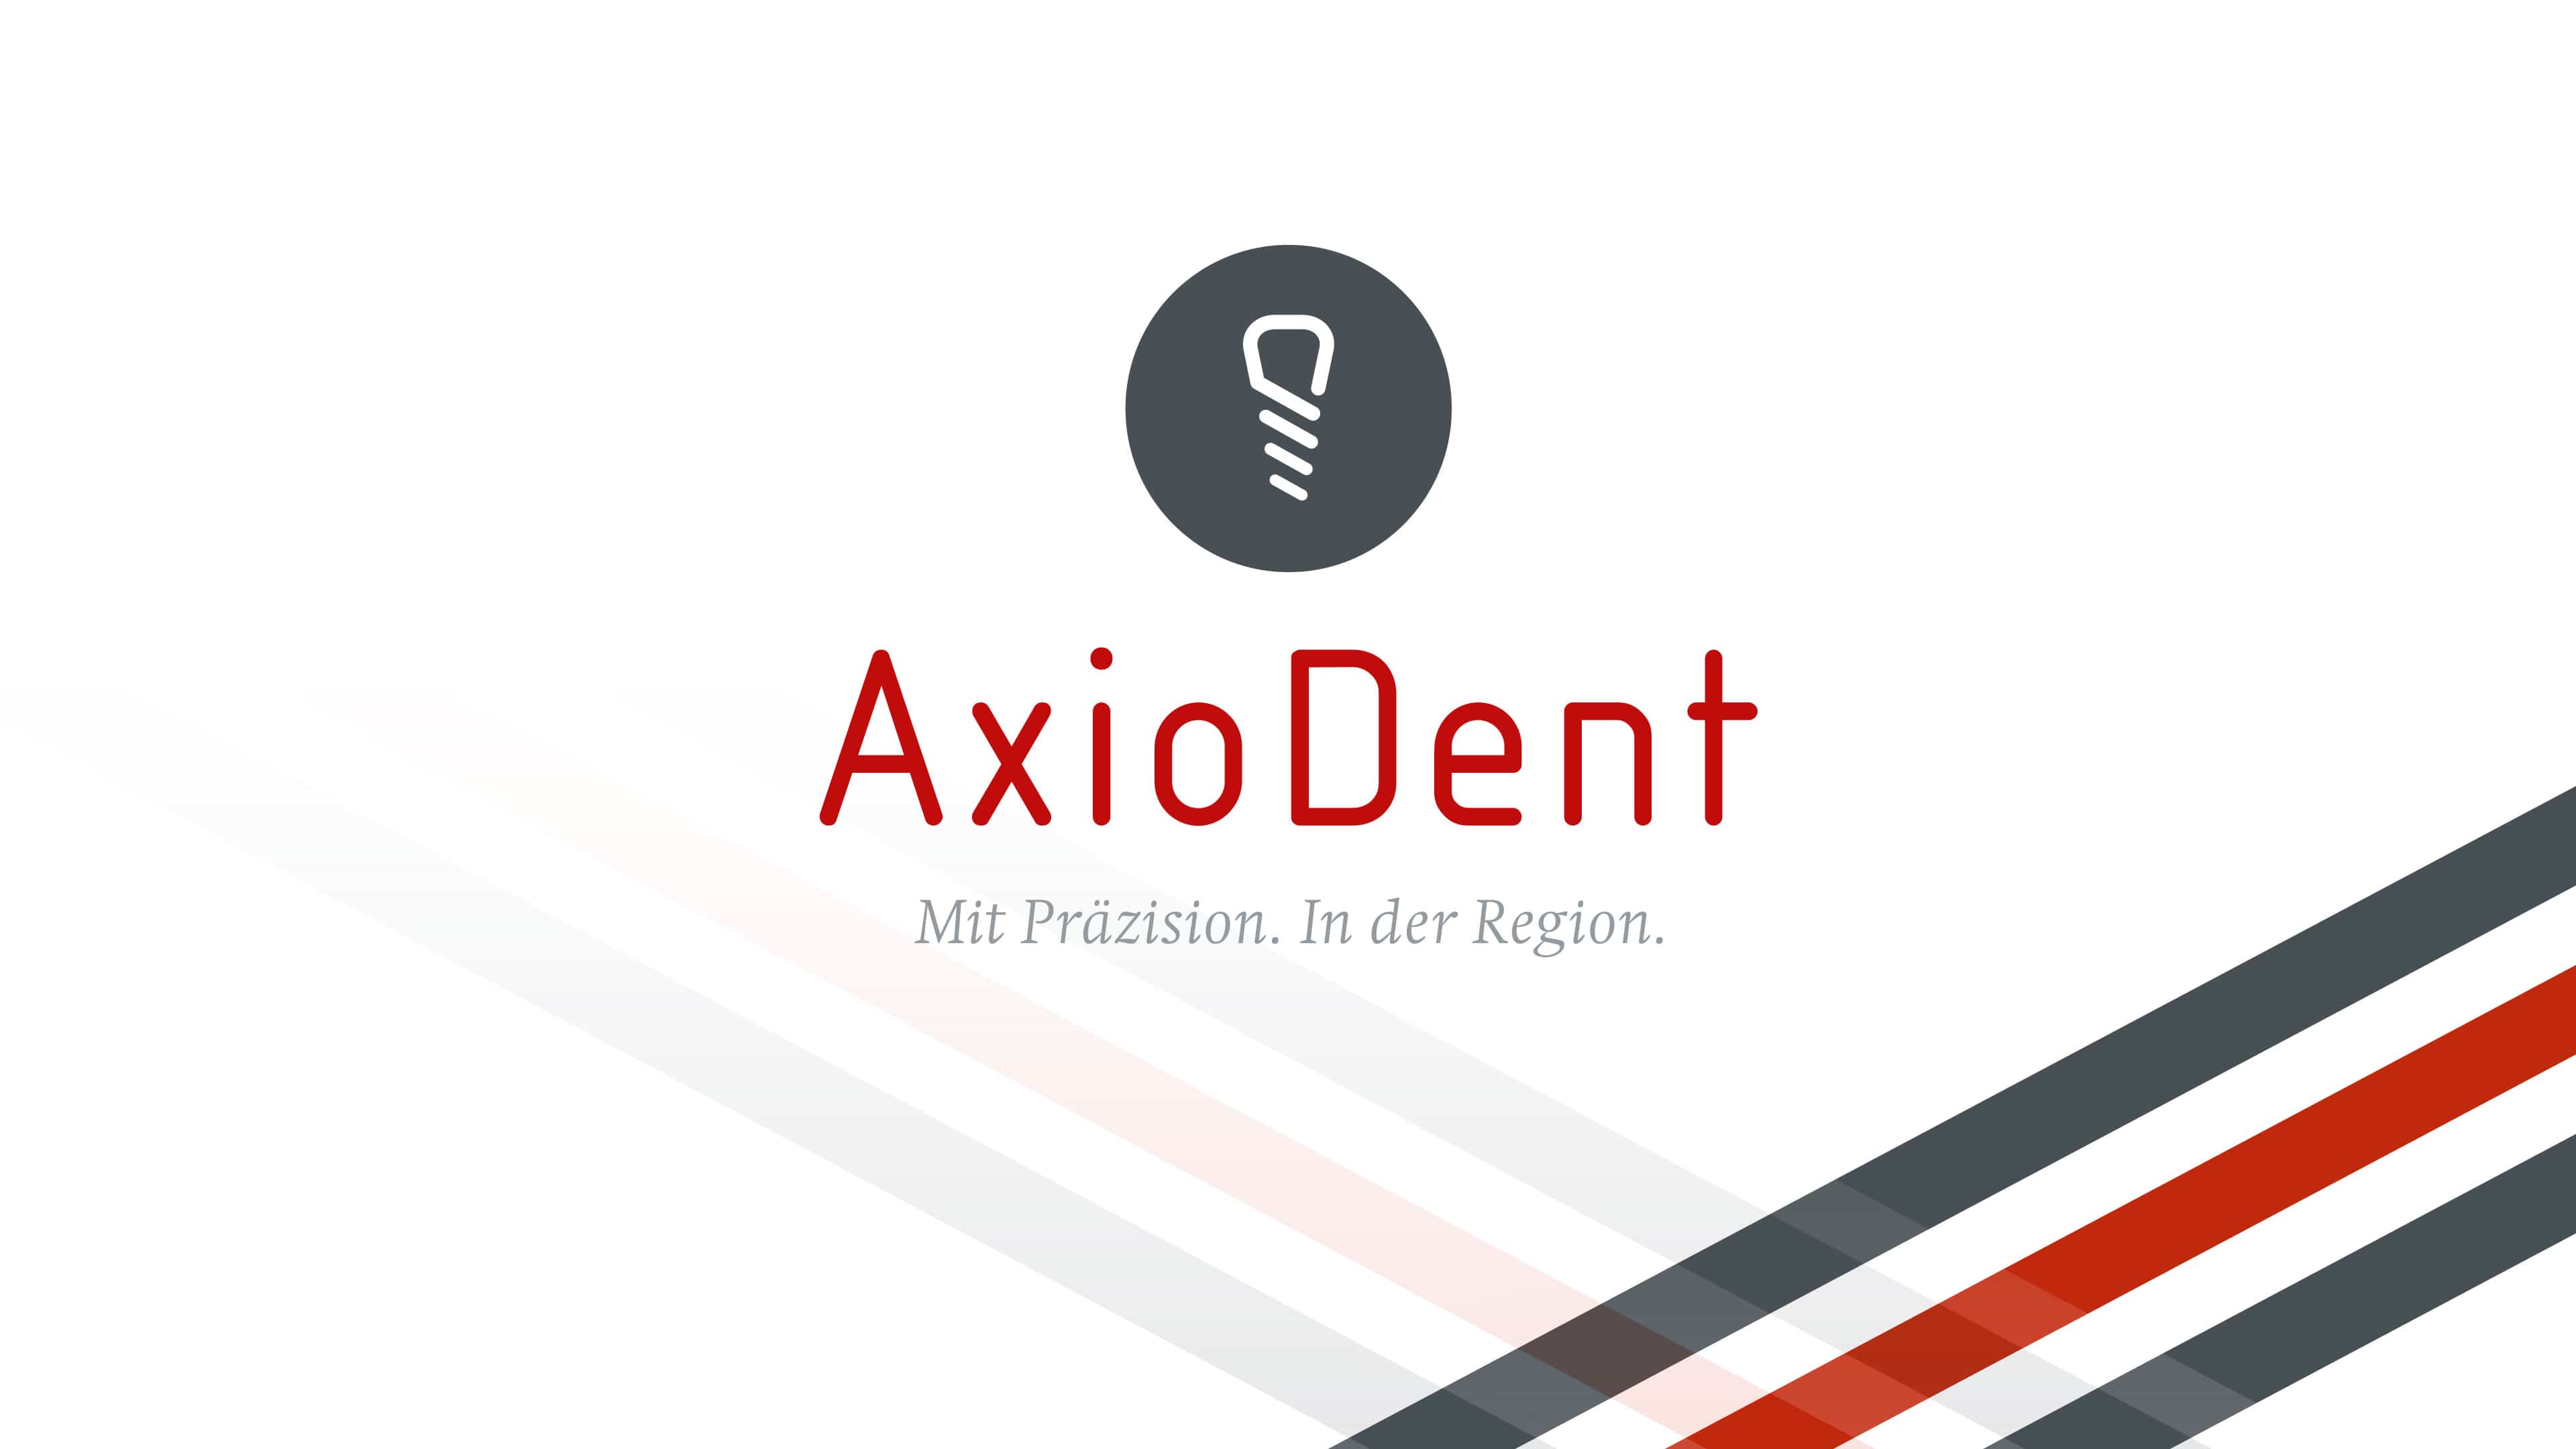 Stilisiertes Zahnimplantat auf grauem kreisförmigem Hintergrund, AxioDent in roter Schrift und der Slogan „Mit Präzision. In der Region.“ 